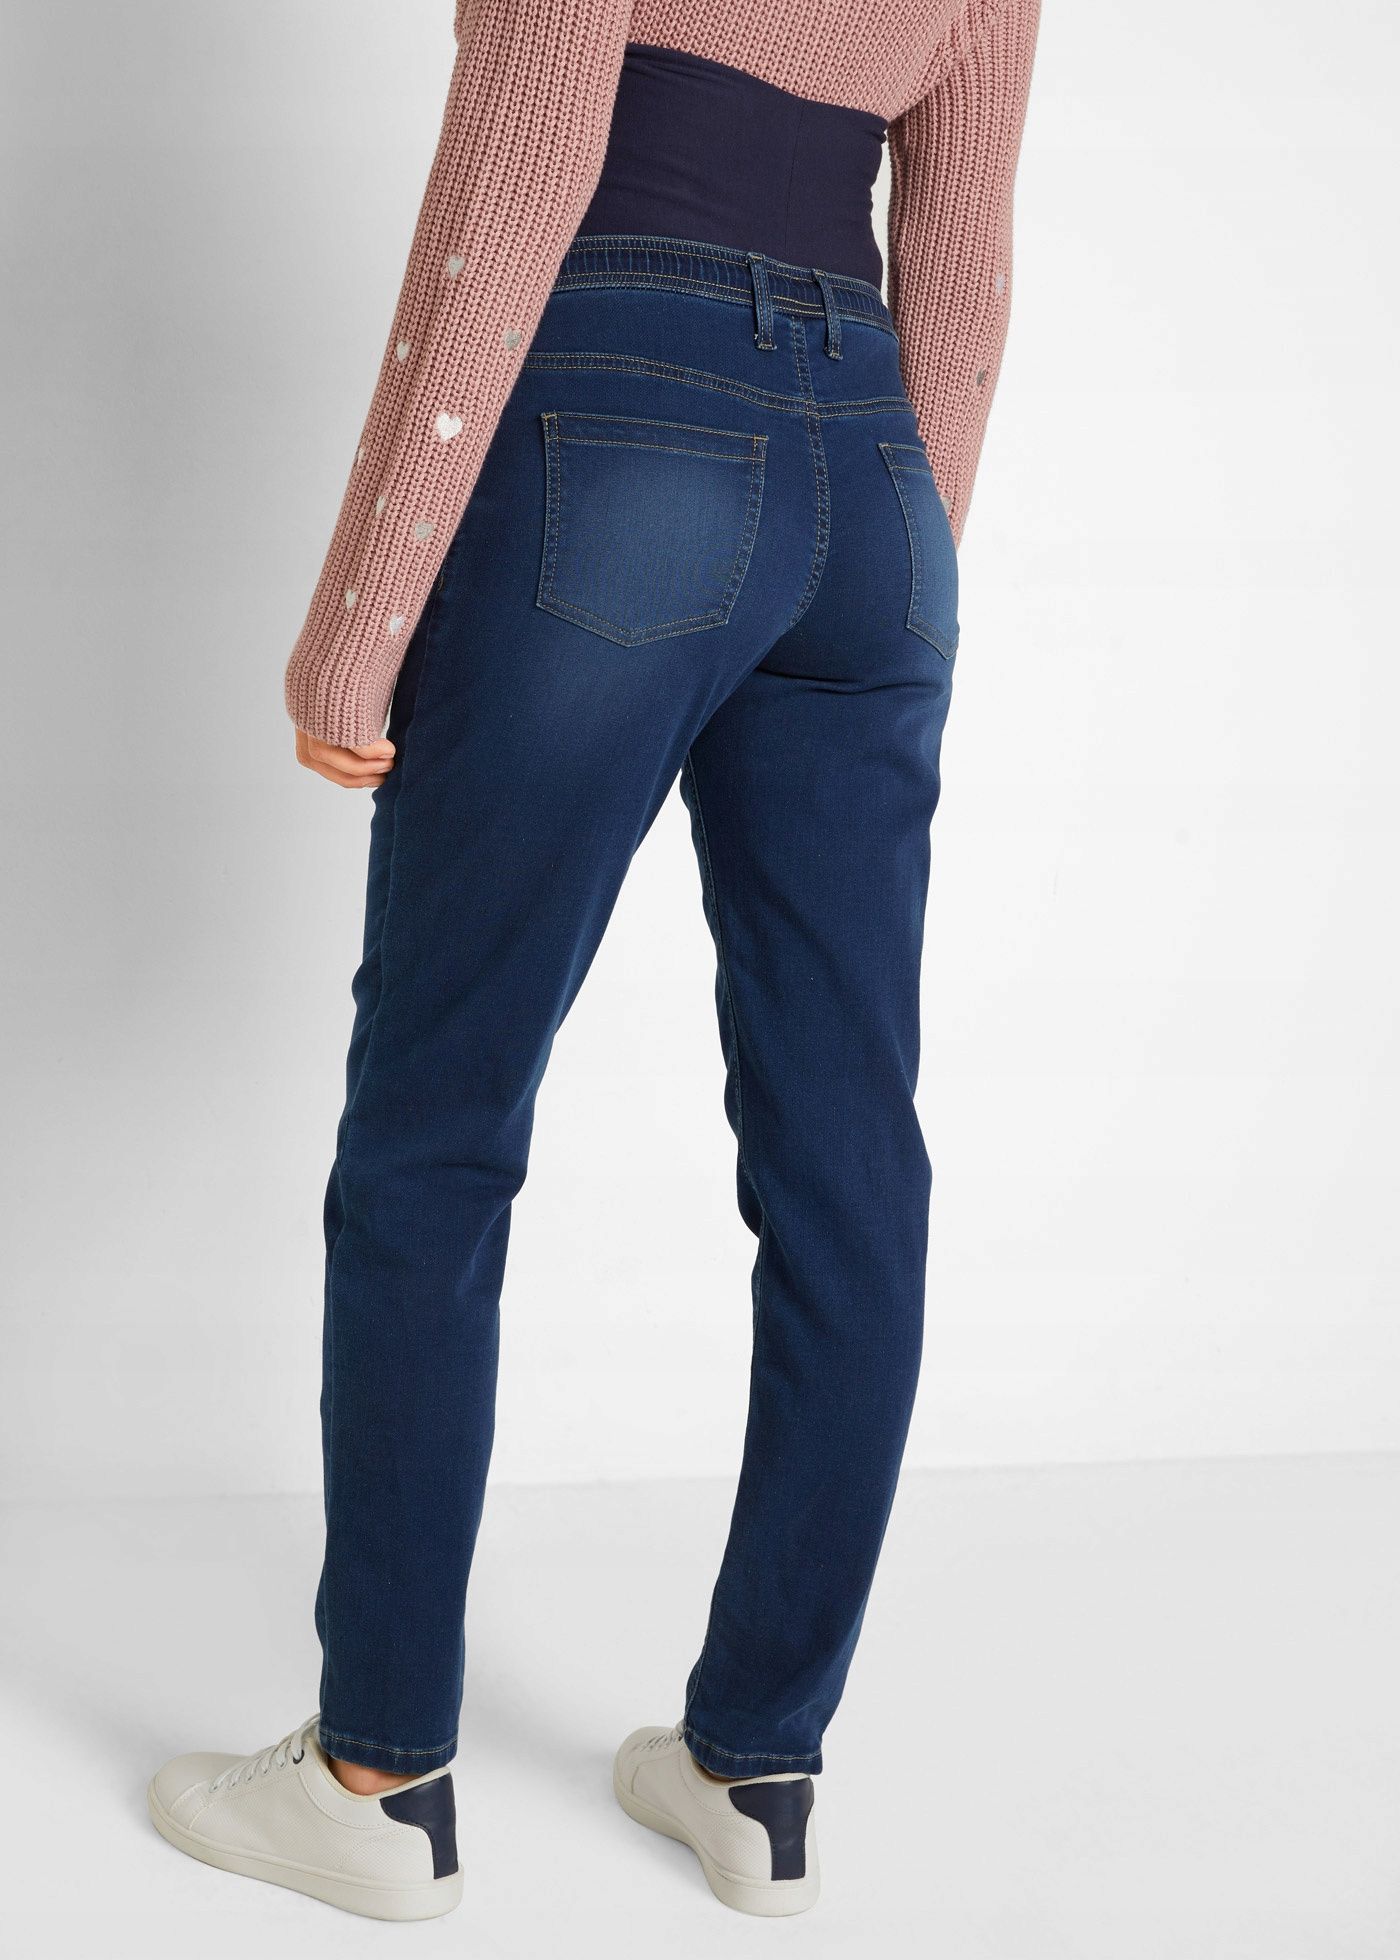 B.P.C ciążowe jeansy modne r.38